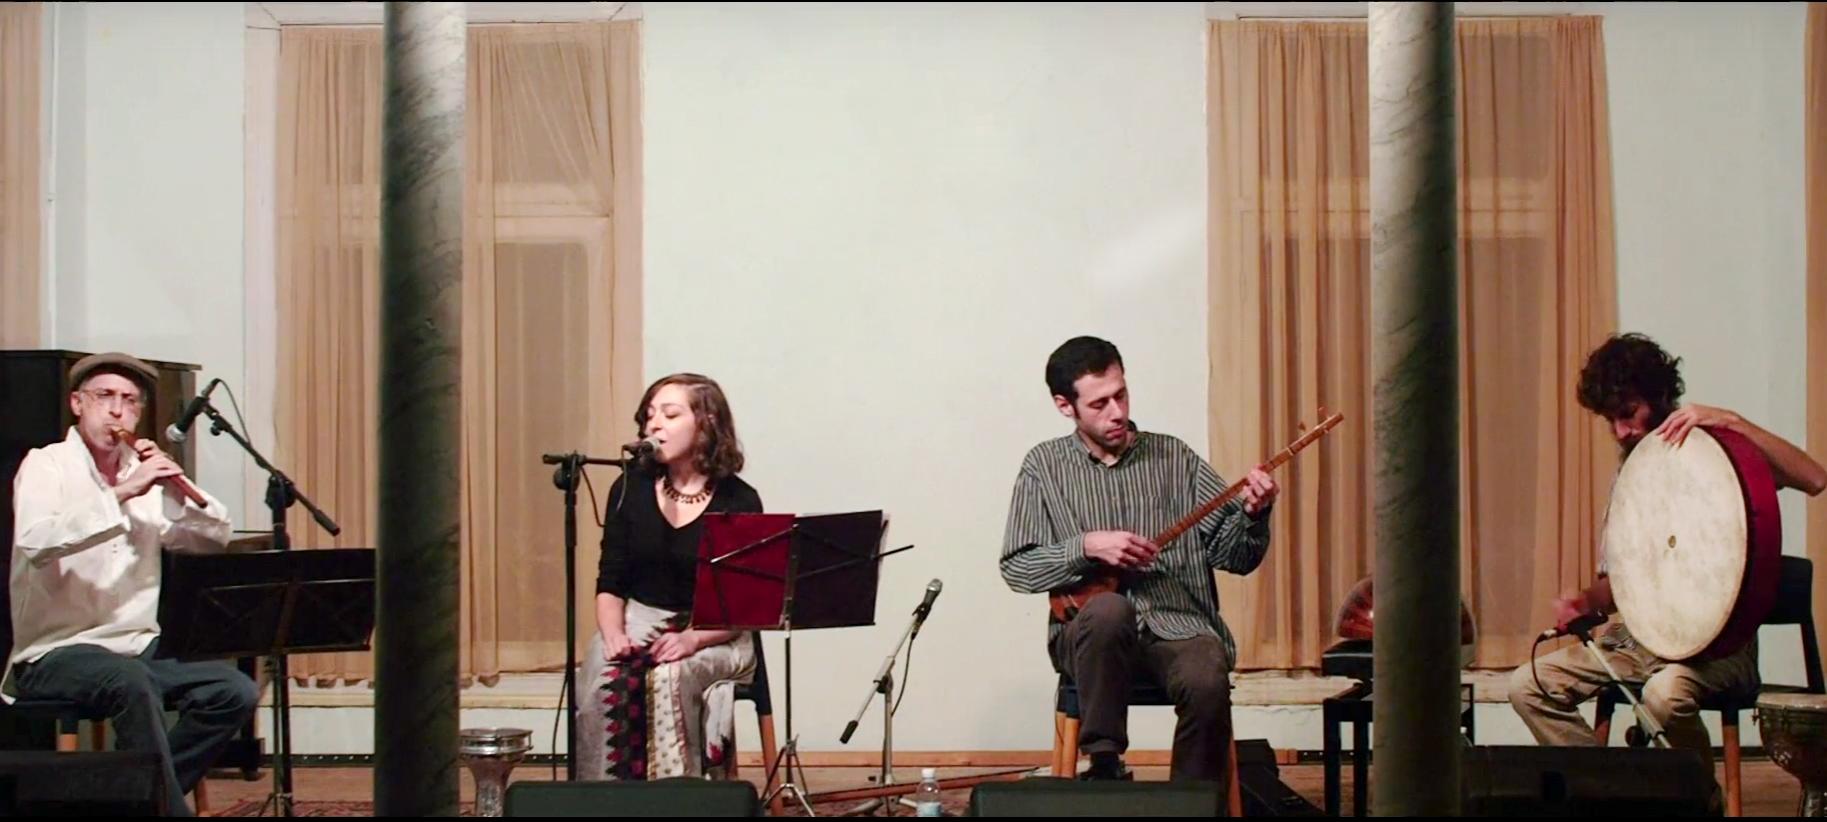 אנסמבל דיליז'אן – מופע מוזיקת עולם מארמניה 